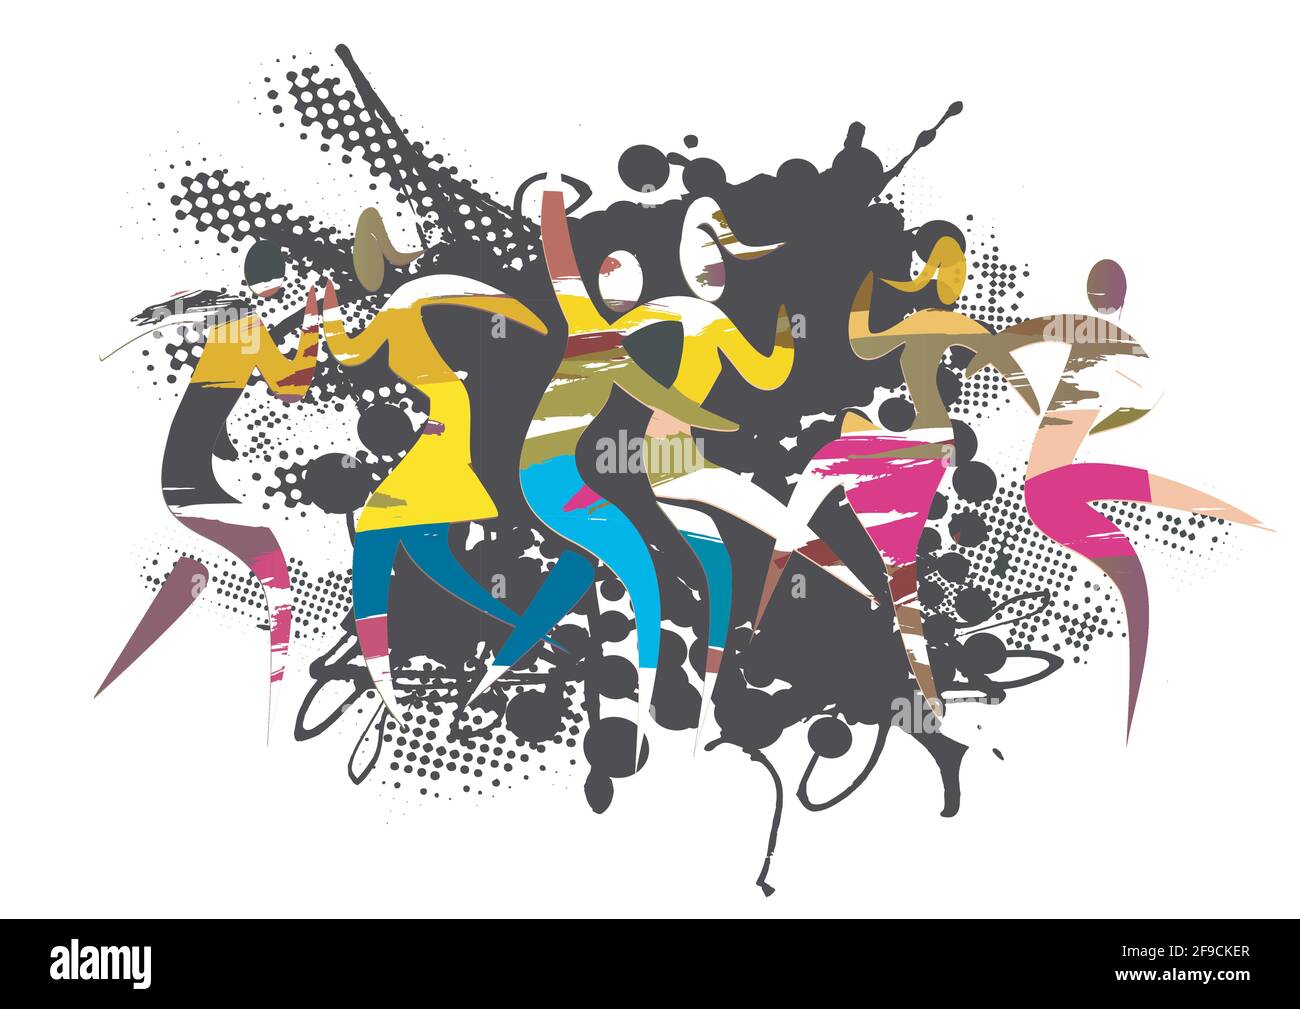 Wilde Tanzparty. Ausdrucksstarke, grunge stilisierte Illustration tanzender Menschen auf abstraktem schwarzem Hintergrund. Vektor verfügbar. Stock Vektor